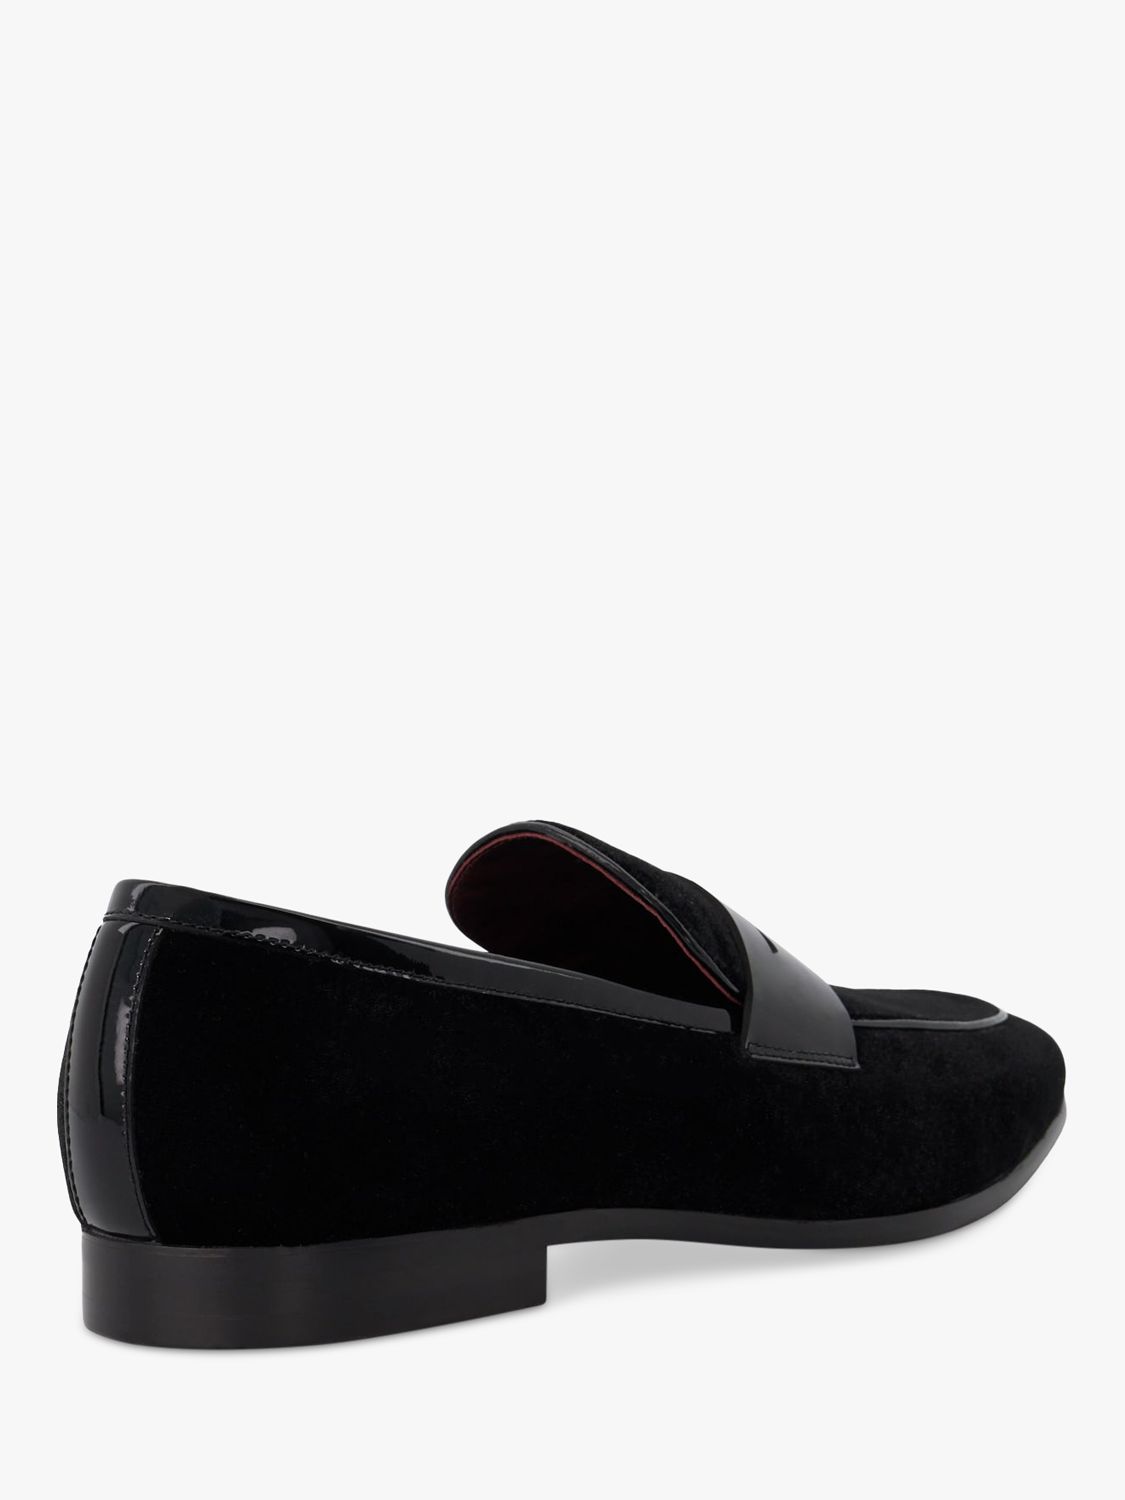 Dune Sensory Velvet Saddle Loafers, Black, 6